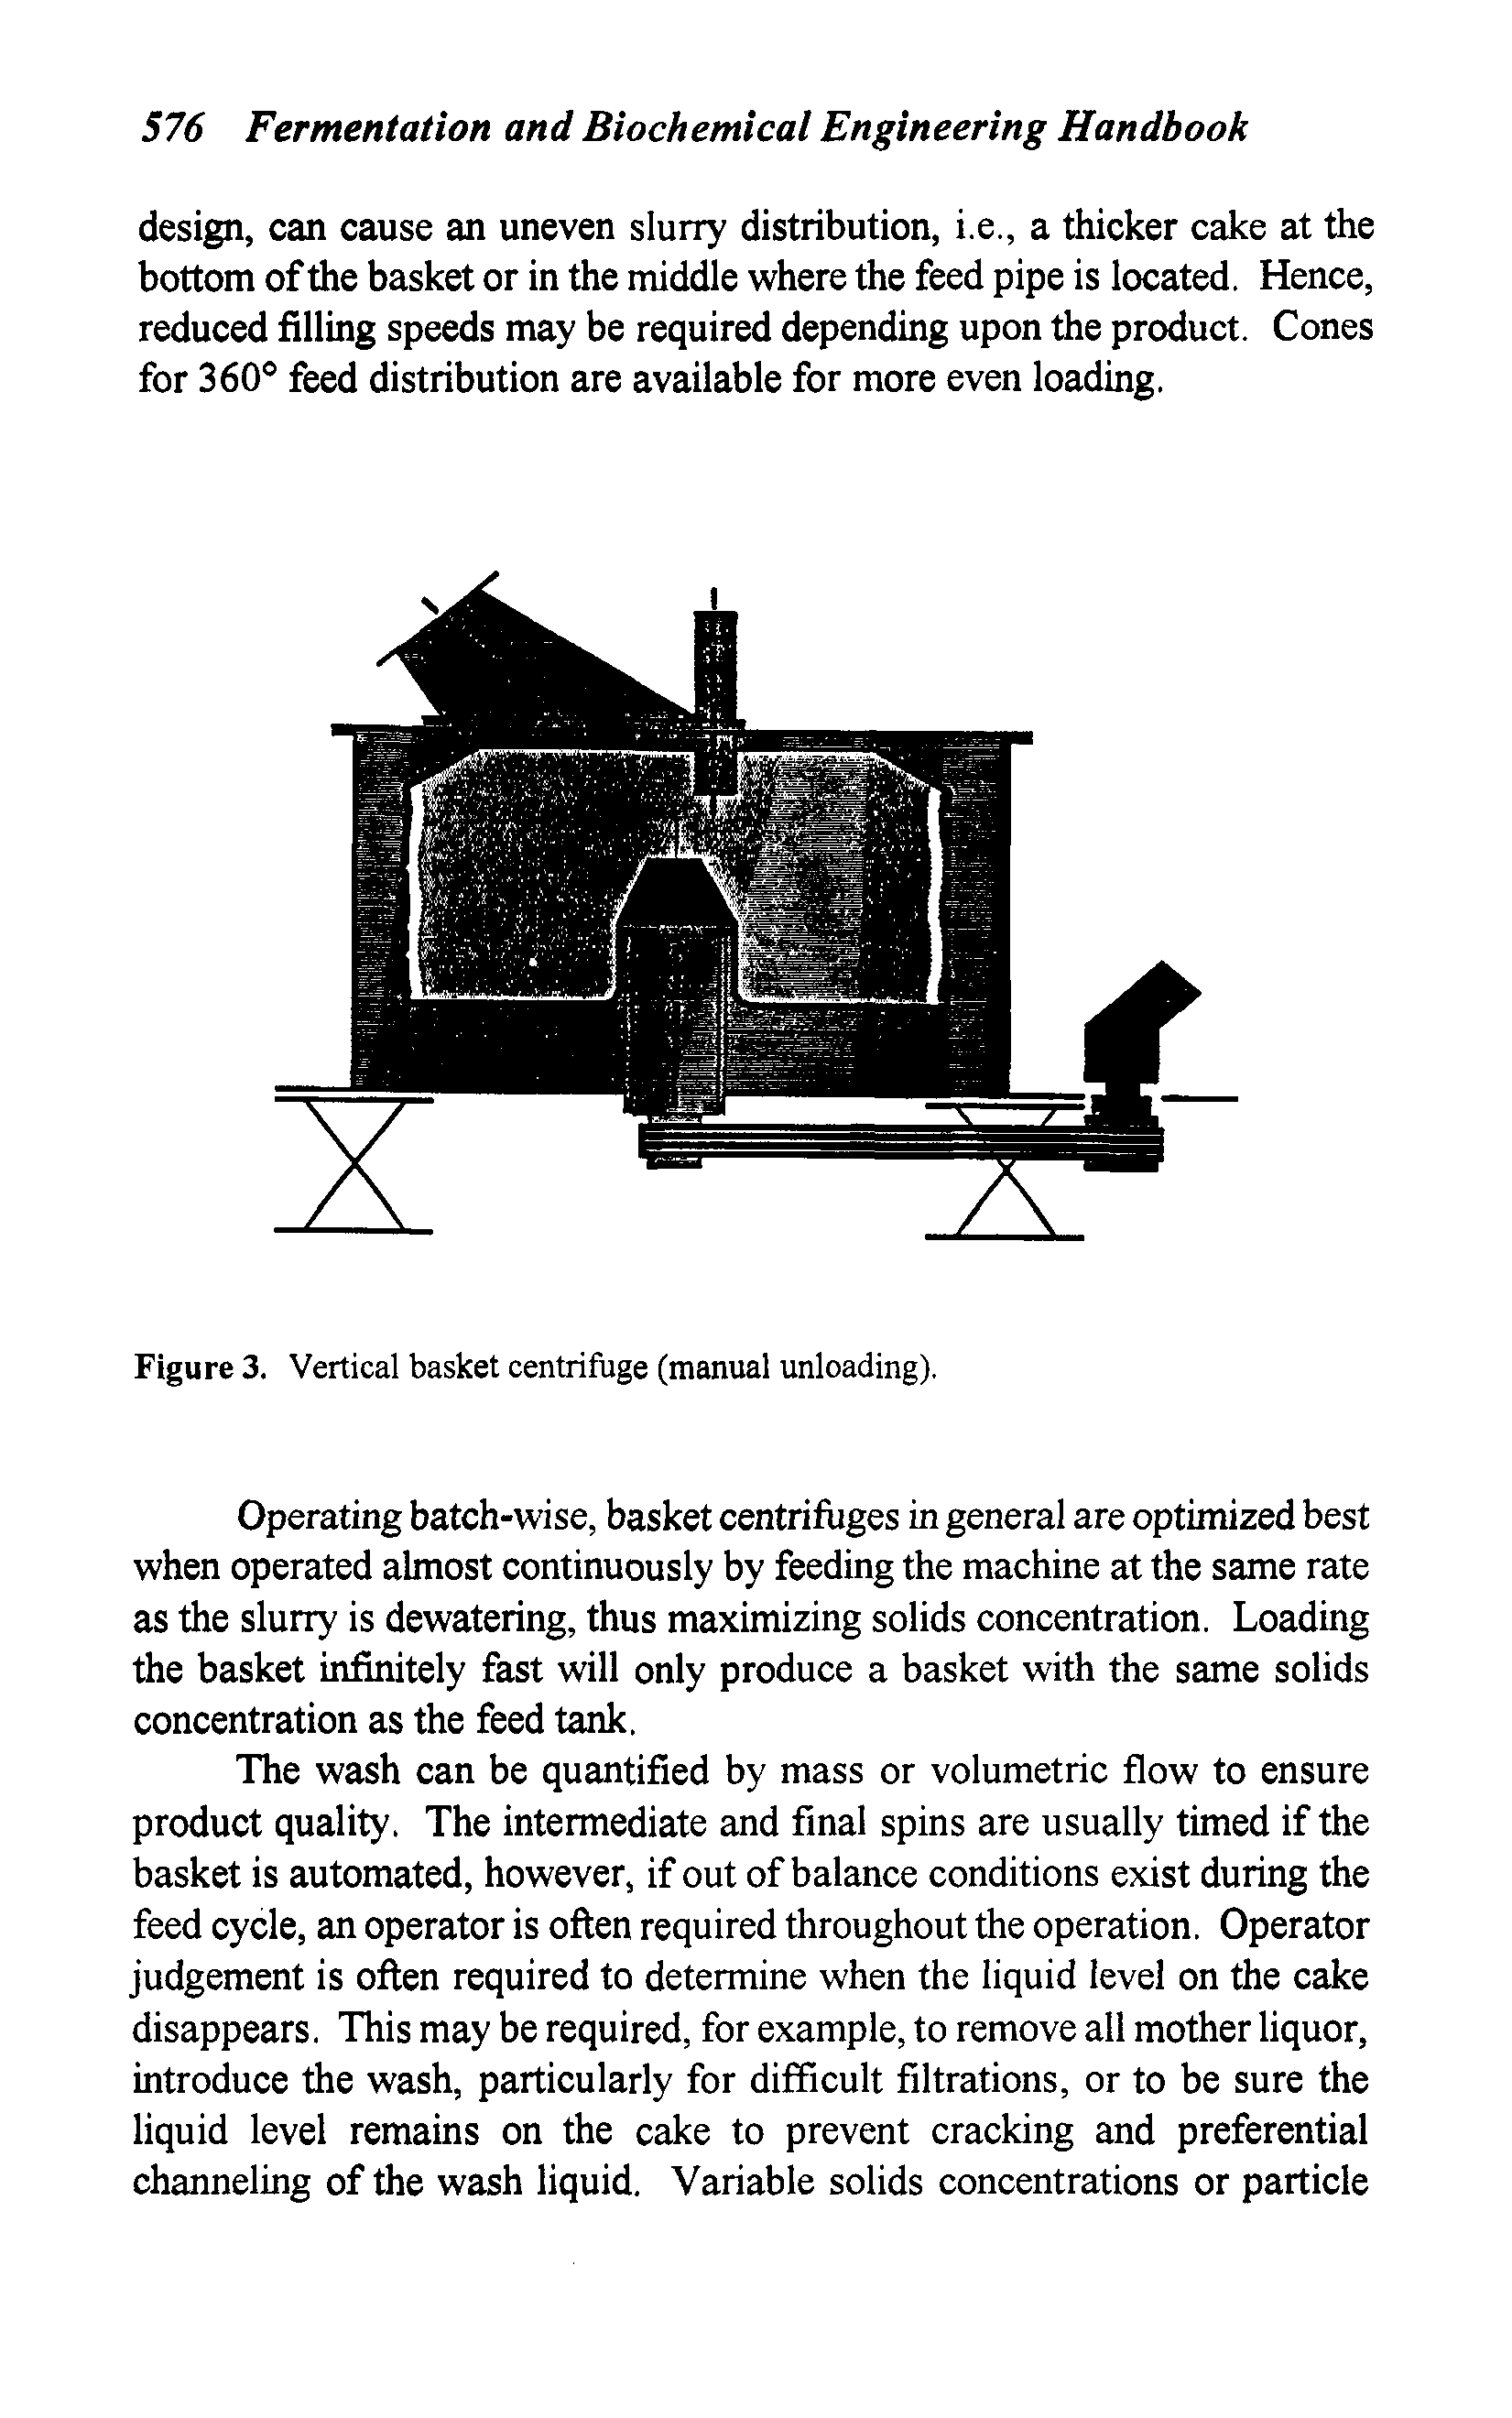 Figure 3. Vertical basket centrifuge (manual unloading).